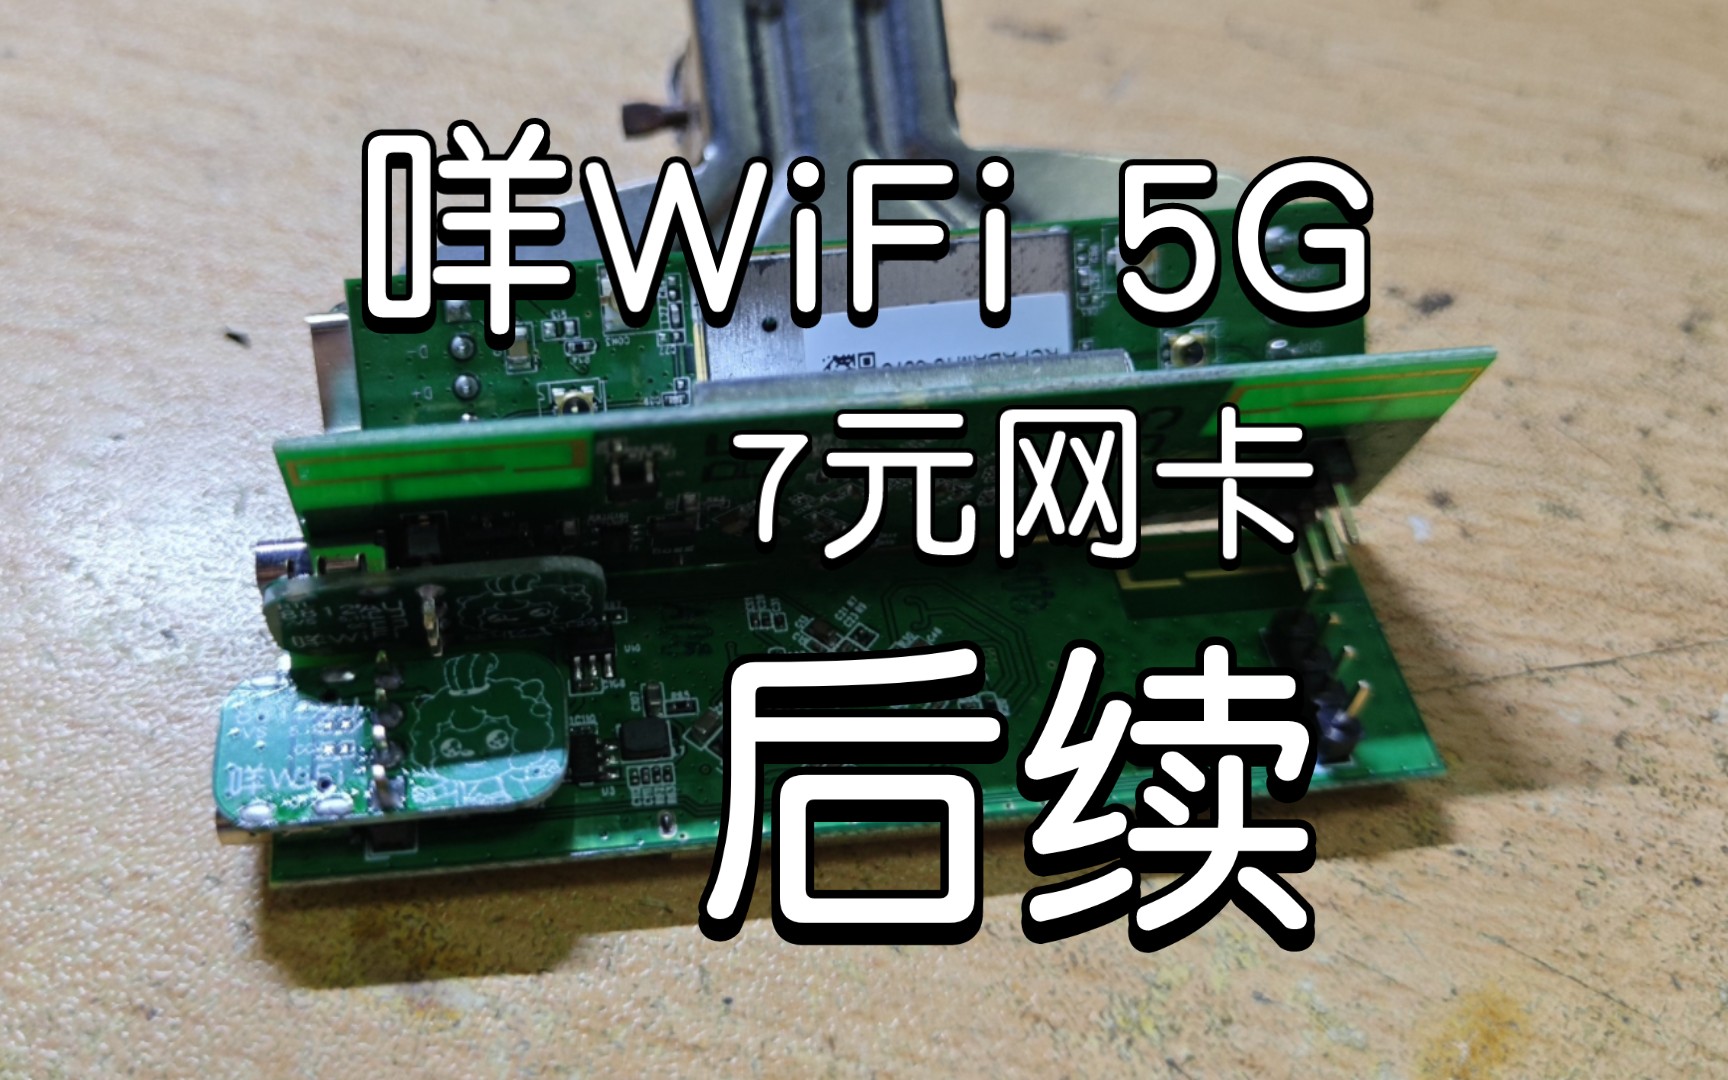 「咩咩焊接」后续 咩WiFi 仅7元的RTL8812AU无线网卡 USB 5G WiFi Kail免驱兼容性巨好 PCB开源